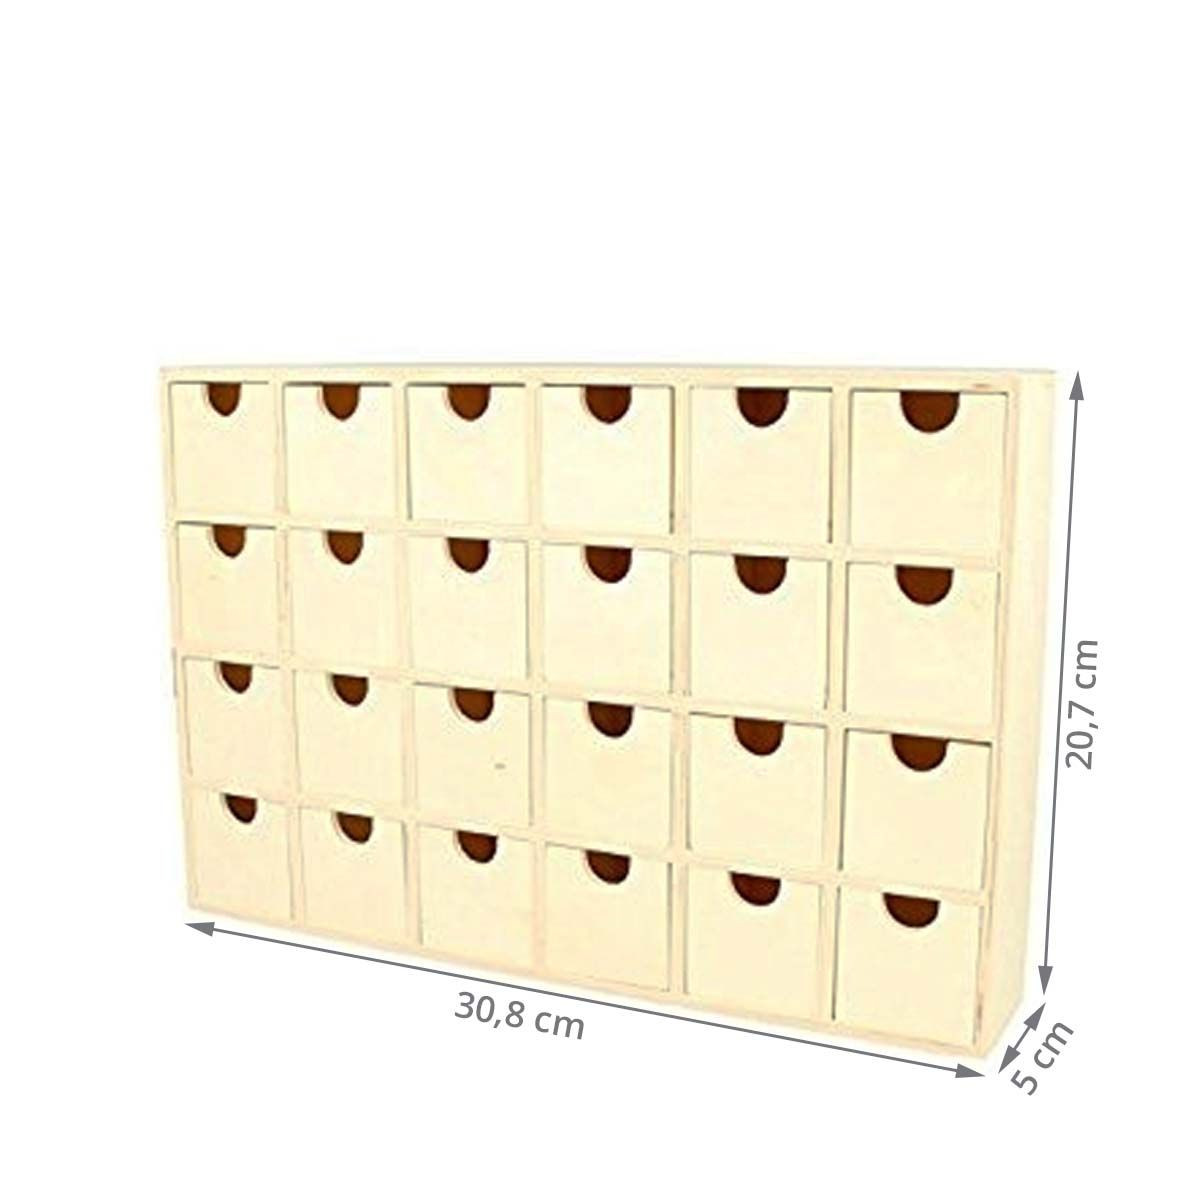 Calendrier de l'avent bois Cadeau - 2 blocs tiroirs 18x18cm et 12.5x12.5cm  - Rangement 24 tiroirs - Artemio